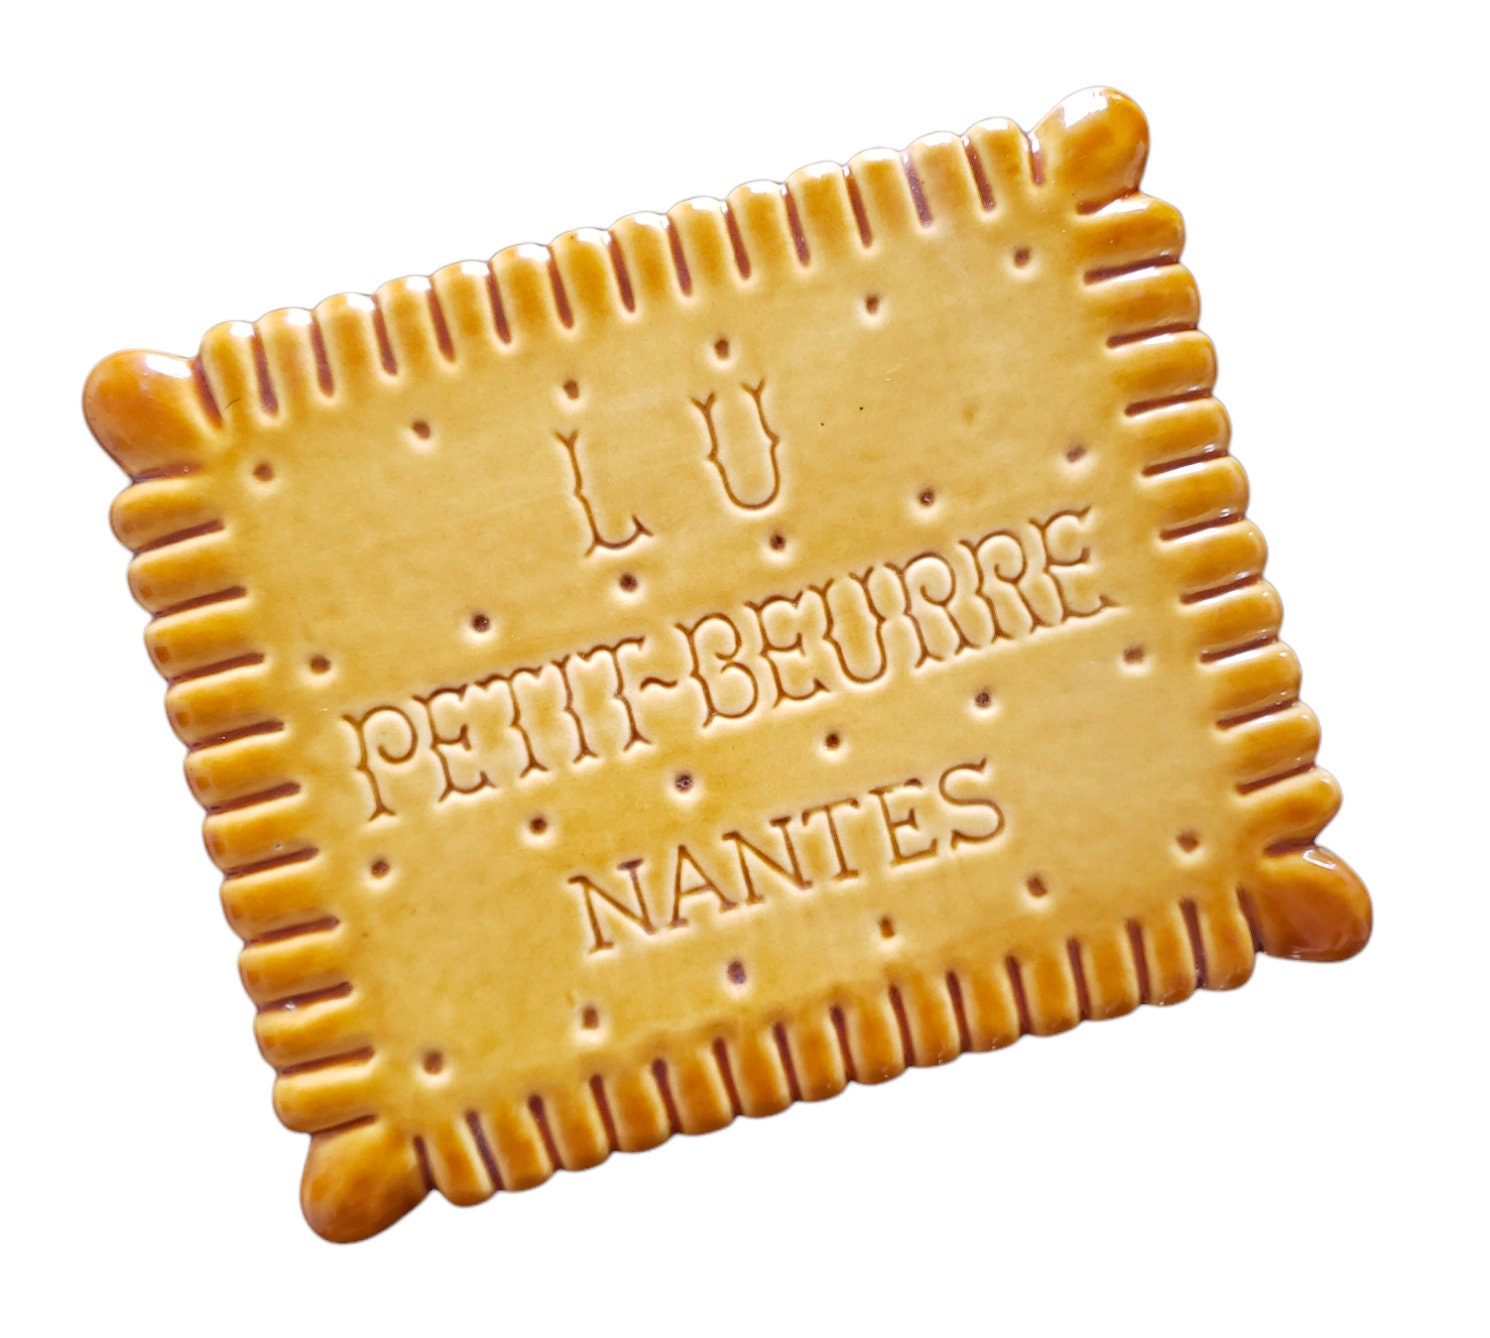 Dessous de plat - Petit Beurre - Biscuits LU